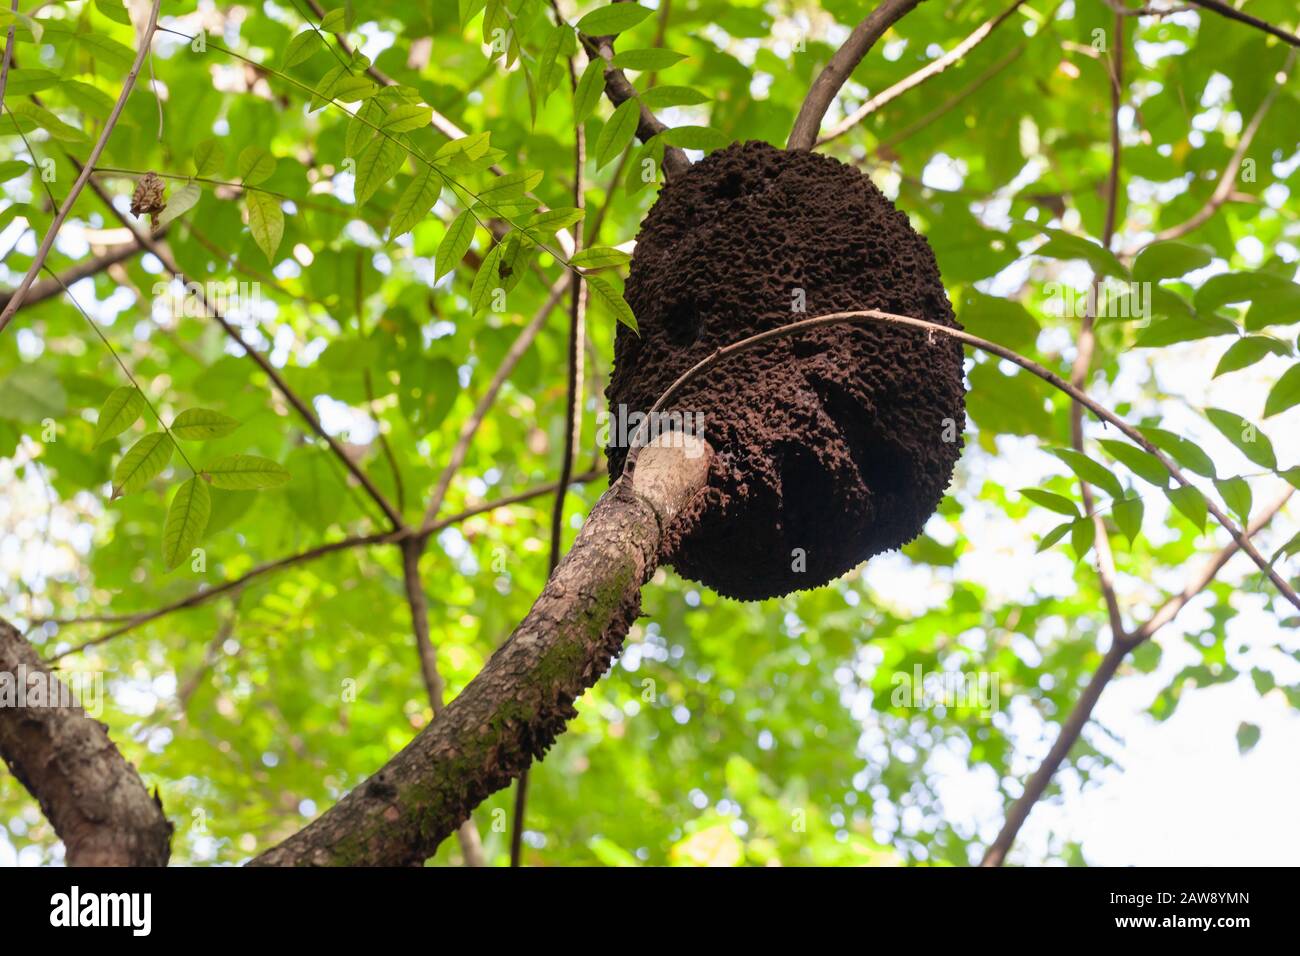 Un nid de termites arboricoles, la nature de la République dominicaine Banque D'Images